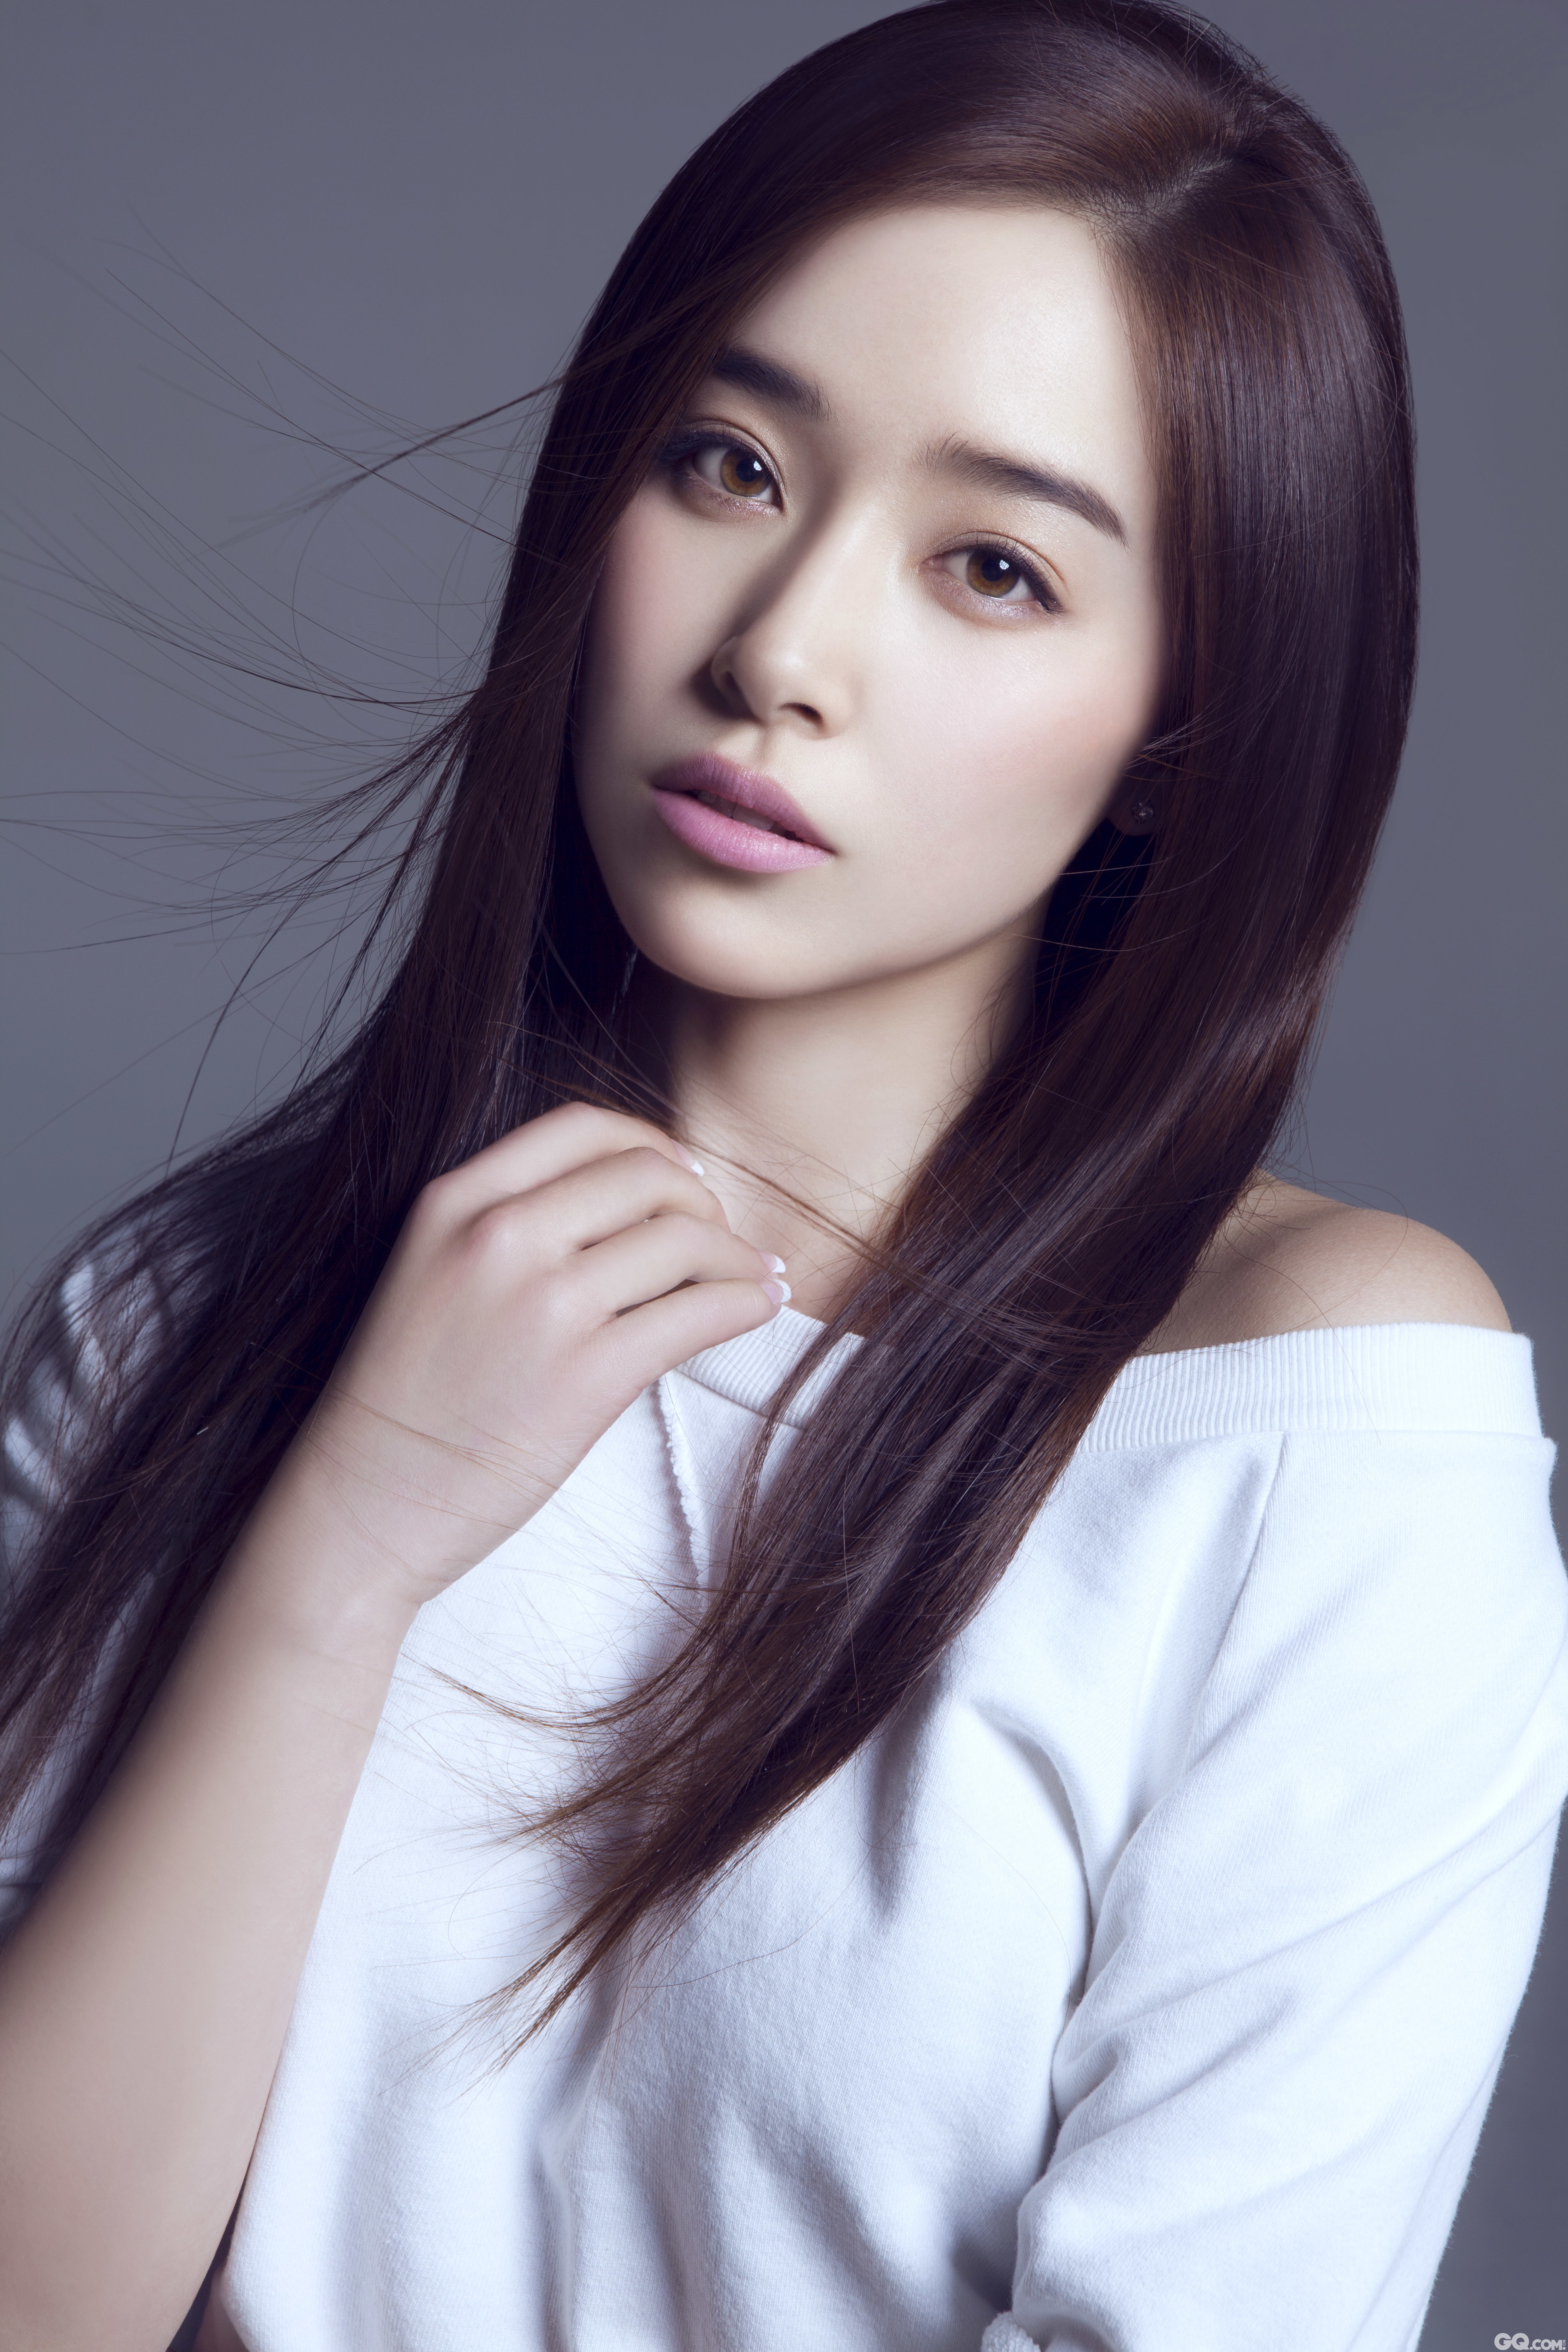 阚清子是中国内地新生代女演员，毕业于北京电影学院表演系。2009年，还在北京电影学院上学的阚清子参演电视剧《娘妻》，正式出道。